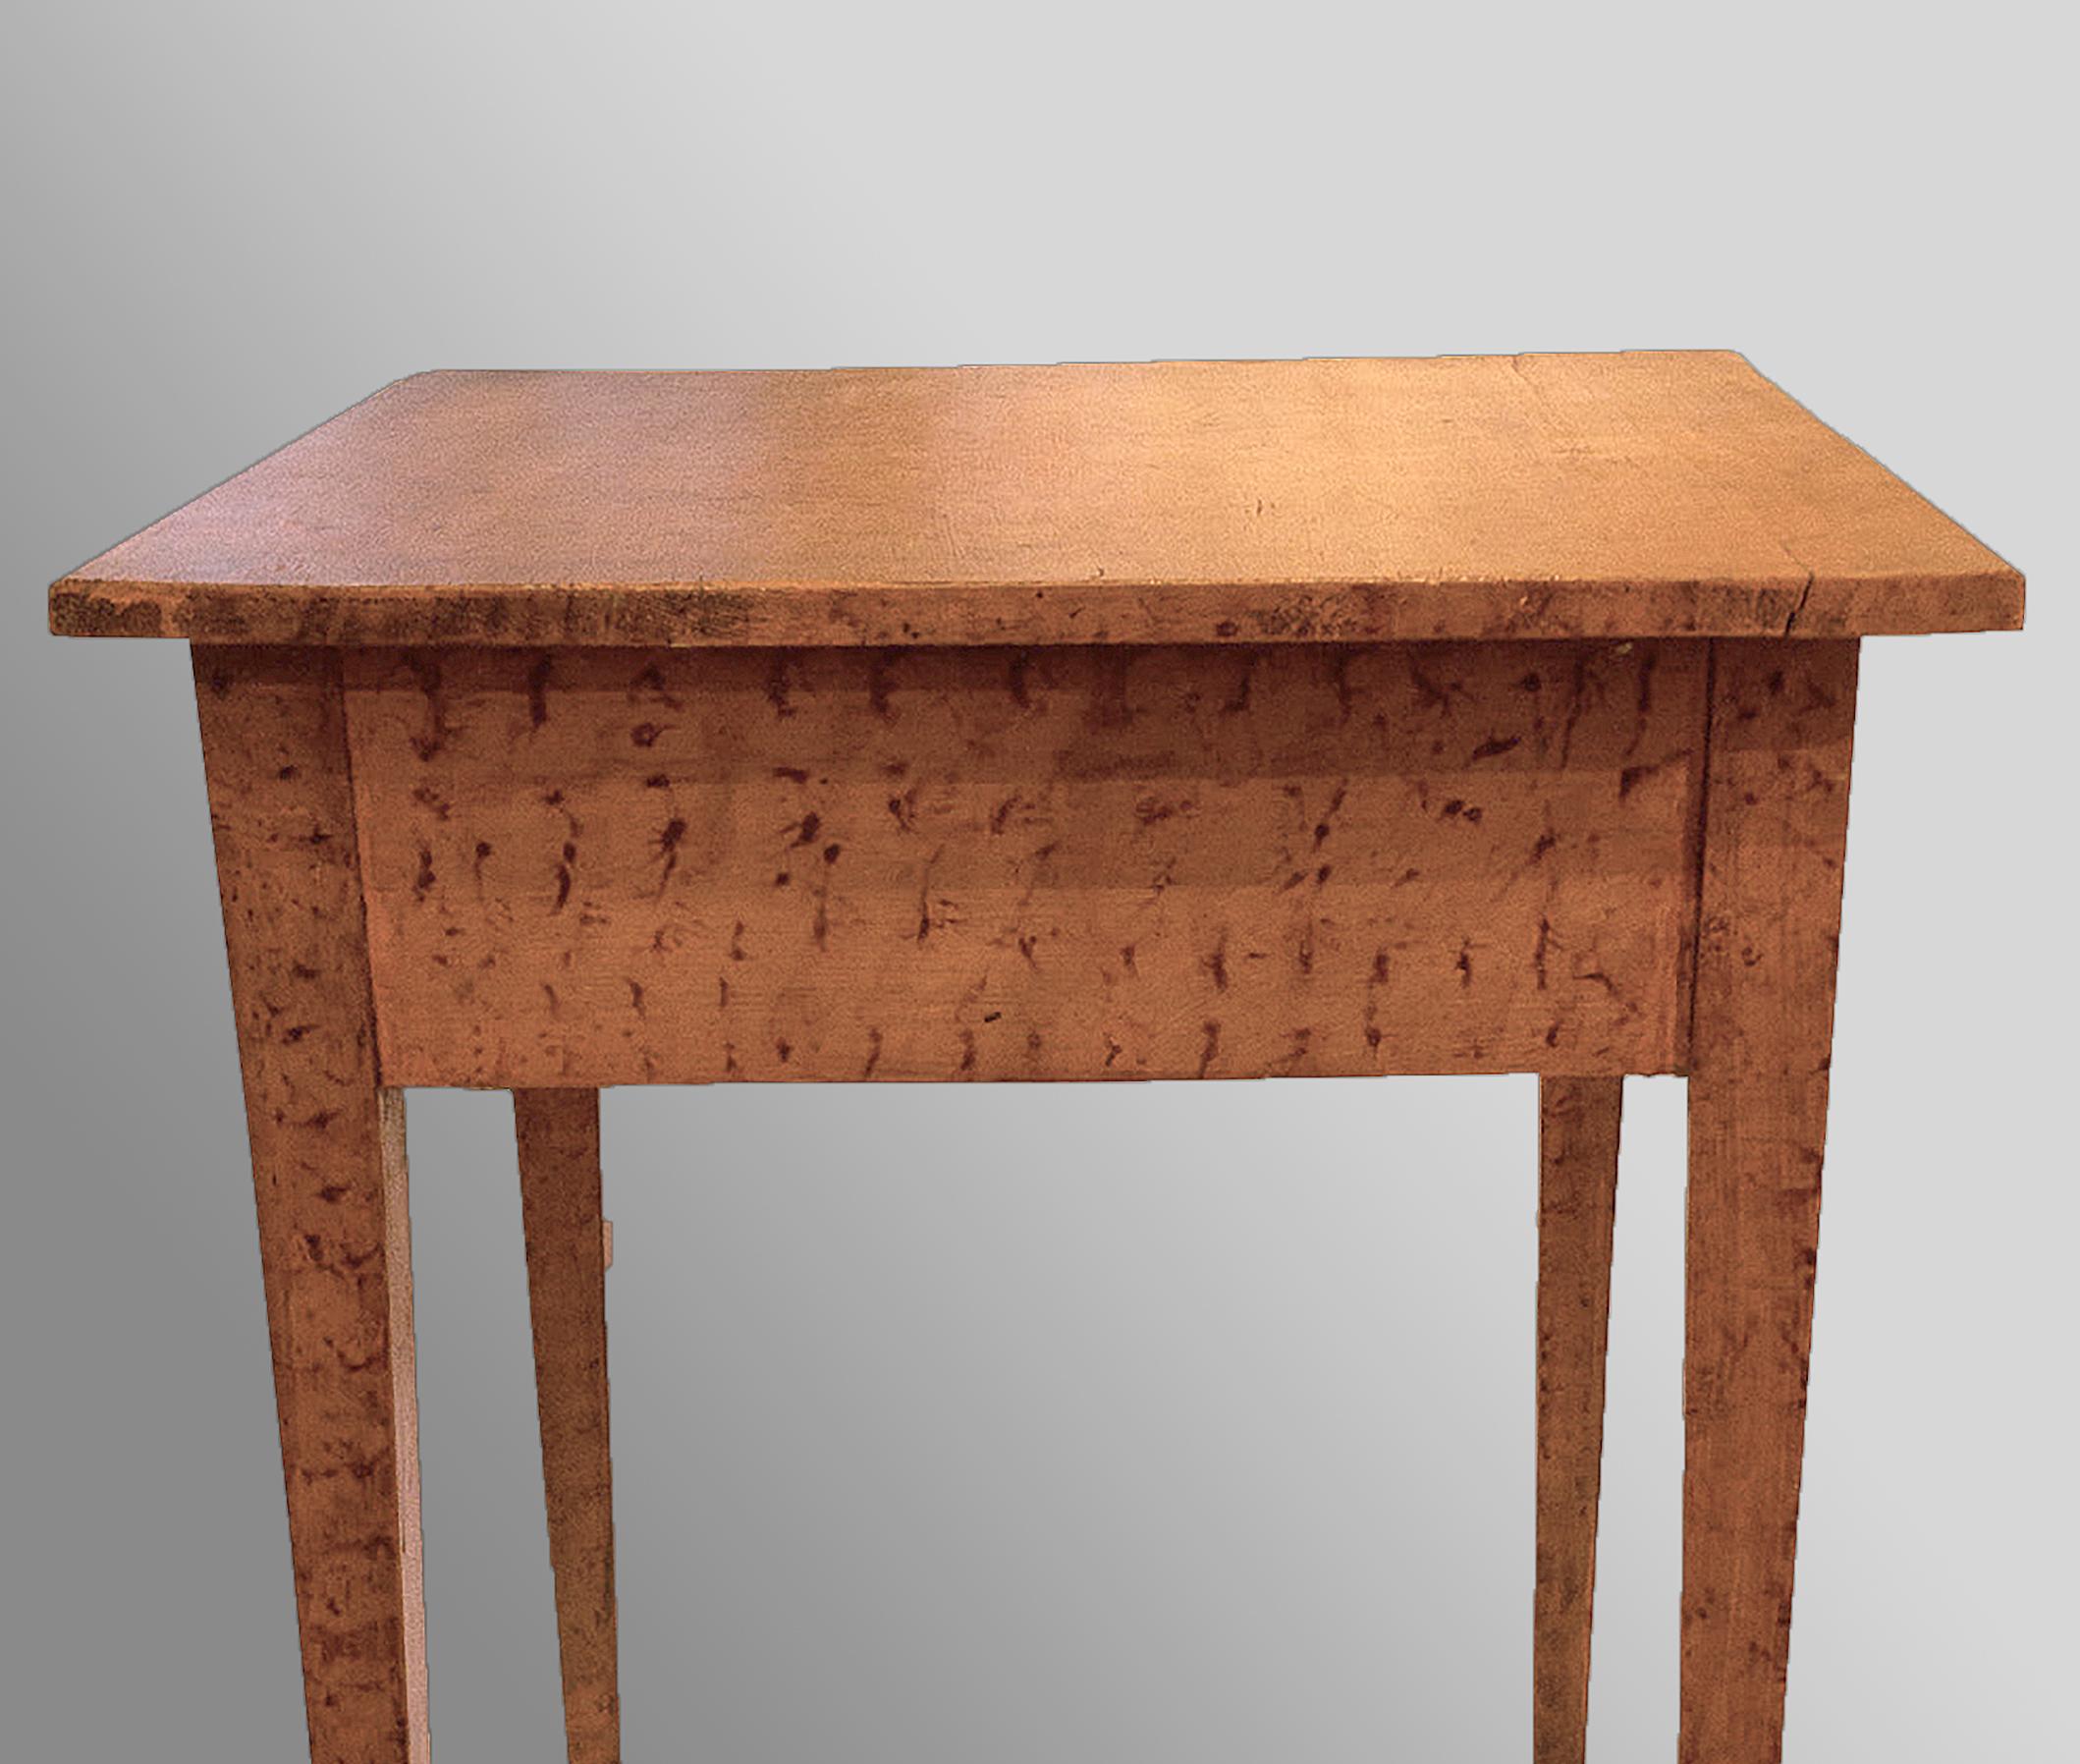 Eine Schublade mit Holzgriff und lachsfarbenem Schwammdekor auf vierkantigen, konischen Beinen. Originallackierung aus Nussbaum und Pappelholz. Berks County, um 1820.

Maße: 30 ½